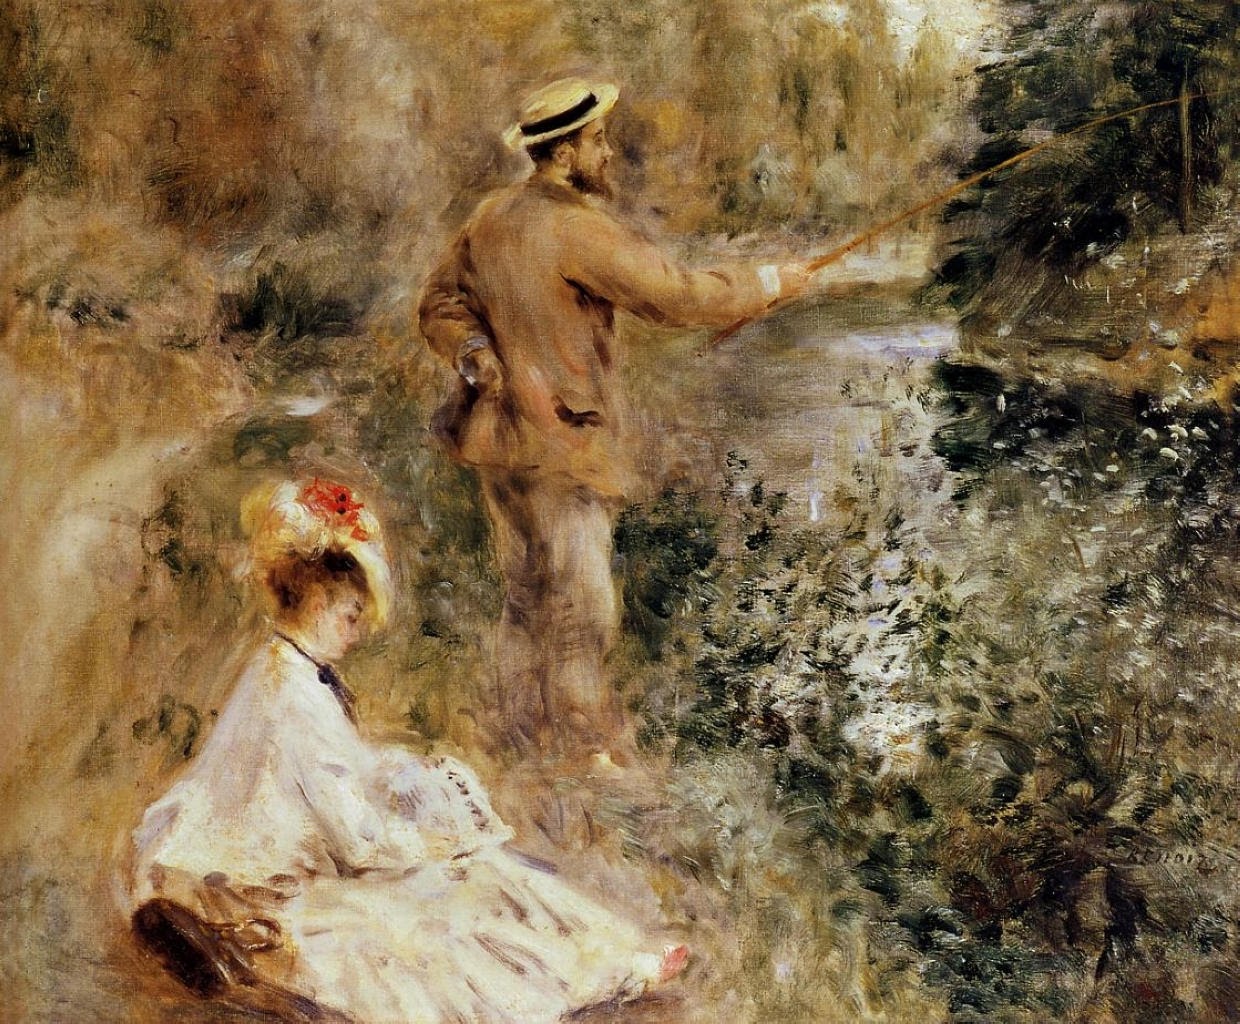 Pierre+Auguste+Renoir-1841-1-19 (662).jpg